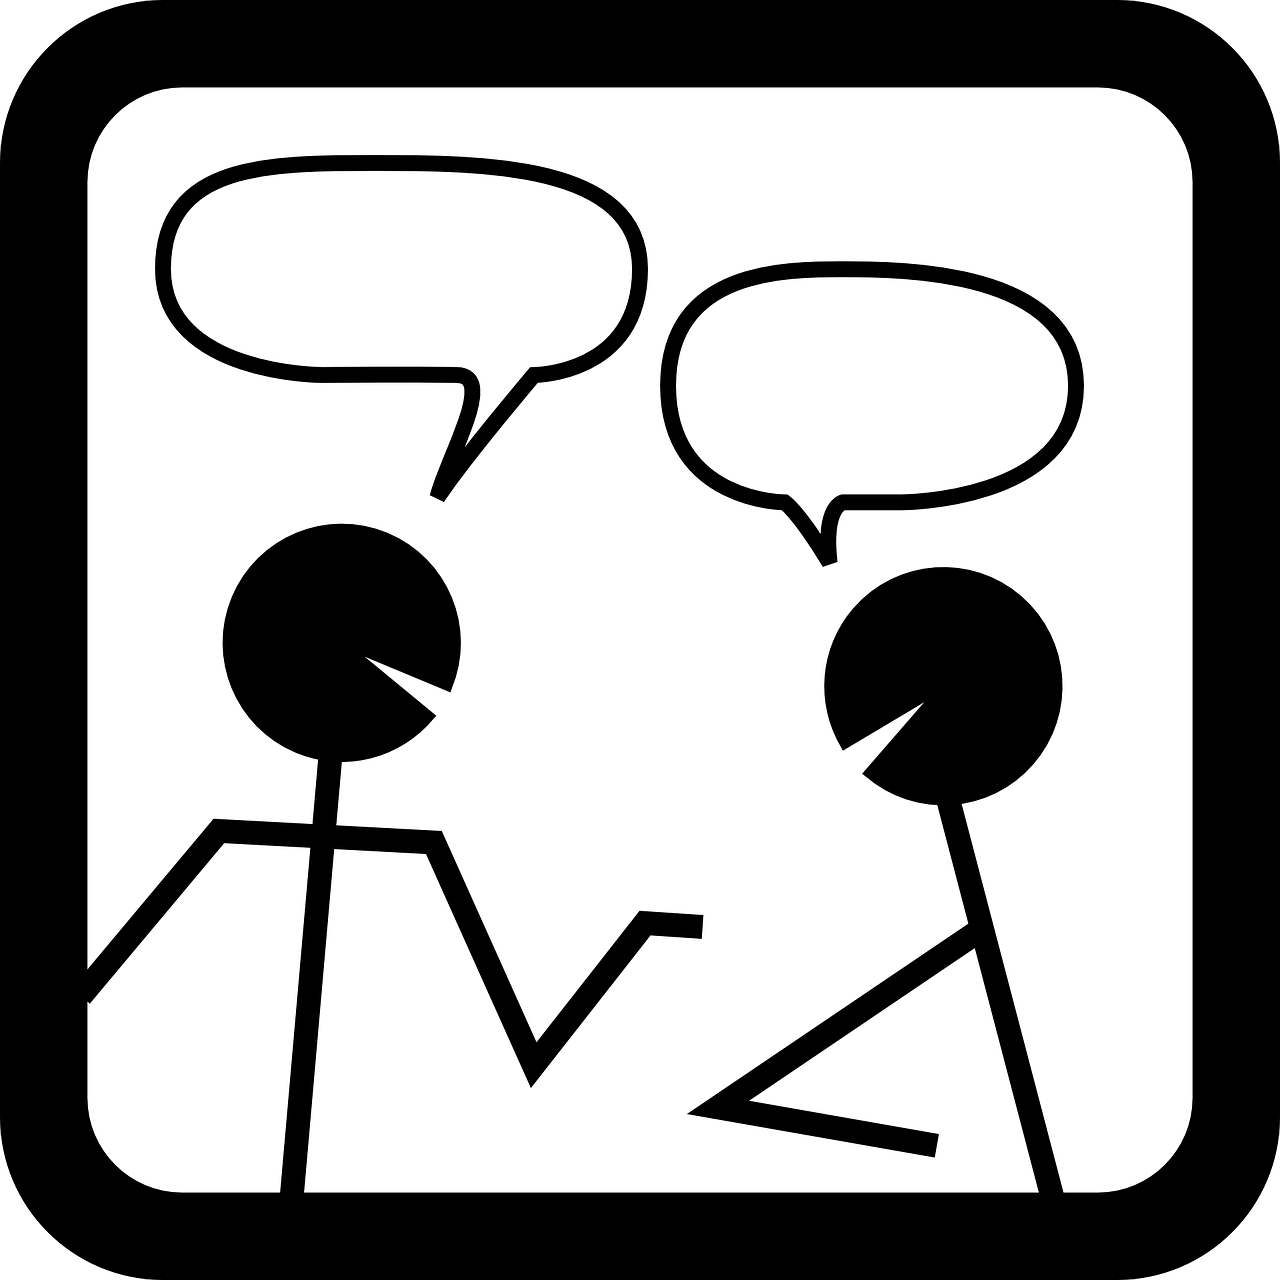 Pokalbis, Diskusija, Susitikimas, Kalbėti, Pokalbis, Kalbėti, Komunikacija, Piktograma, Burbulas, Dizainas